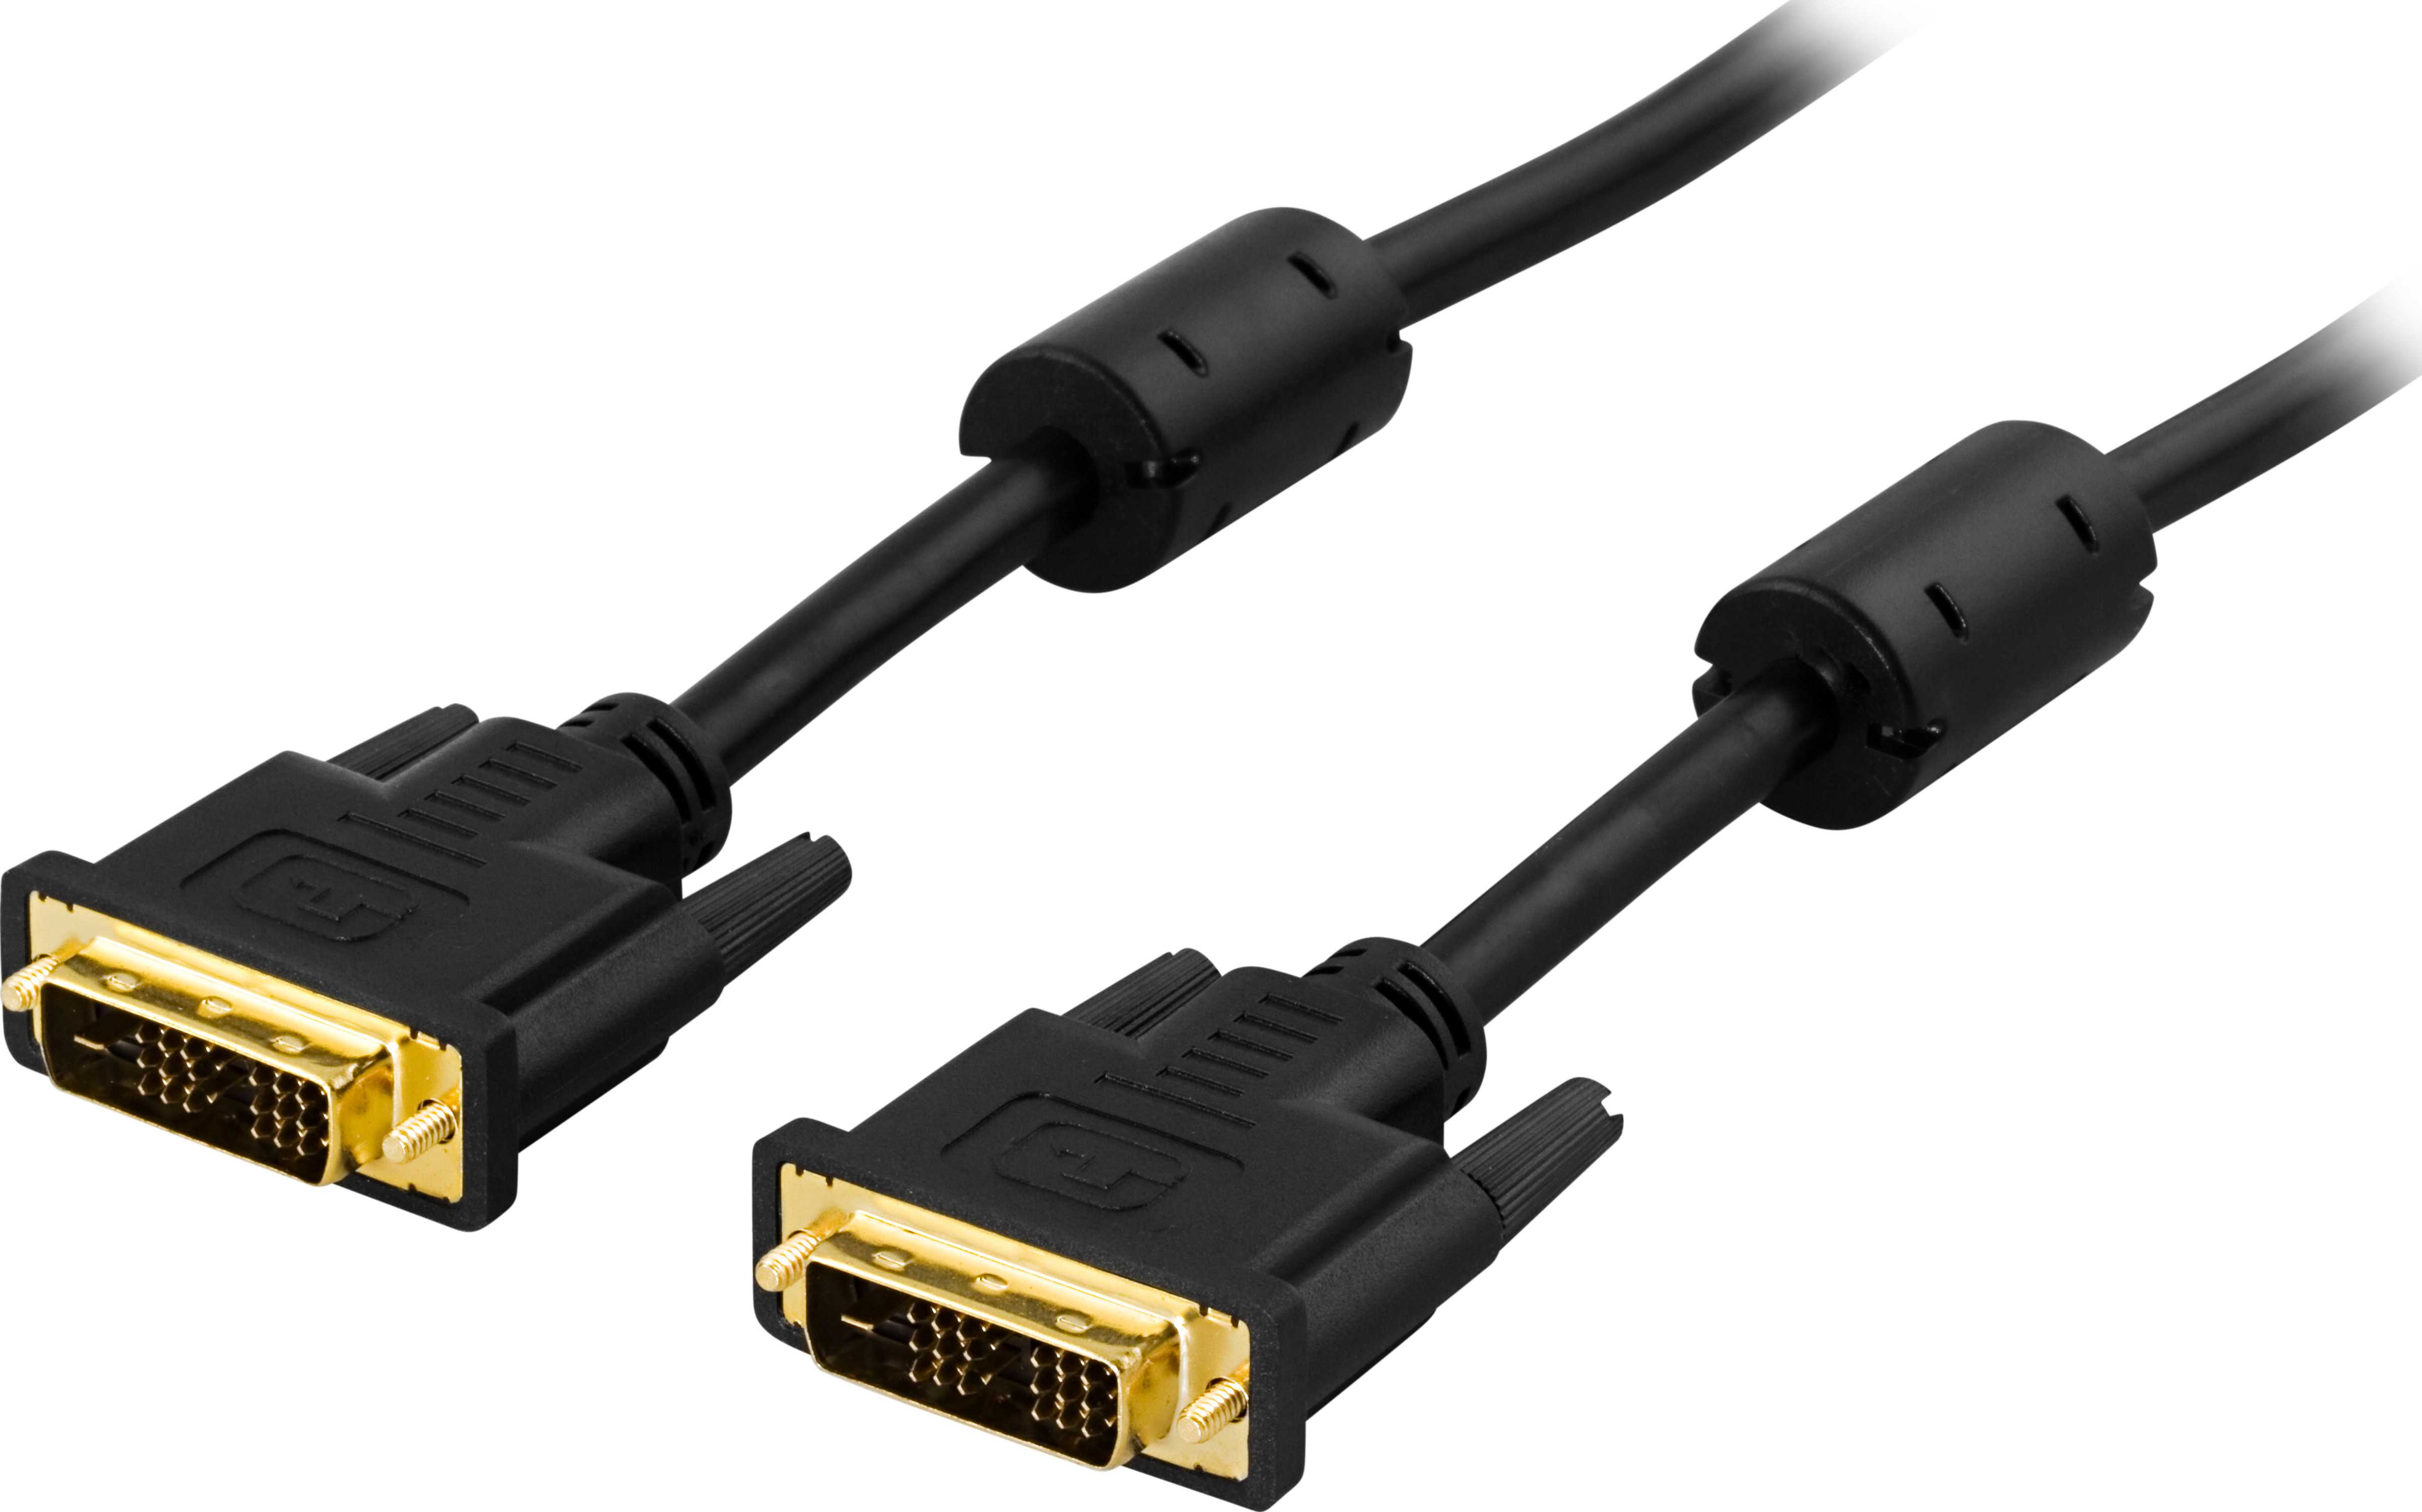 DVI Single Link monitoriaus kabelis DELTACO DVI-D 18 + 1-pin ha-ha, paauksuotos jungtys, laidas iš gryno vario, 5m, juodas / VE011-C